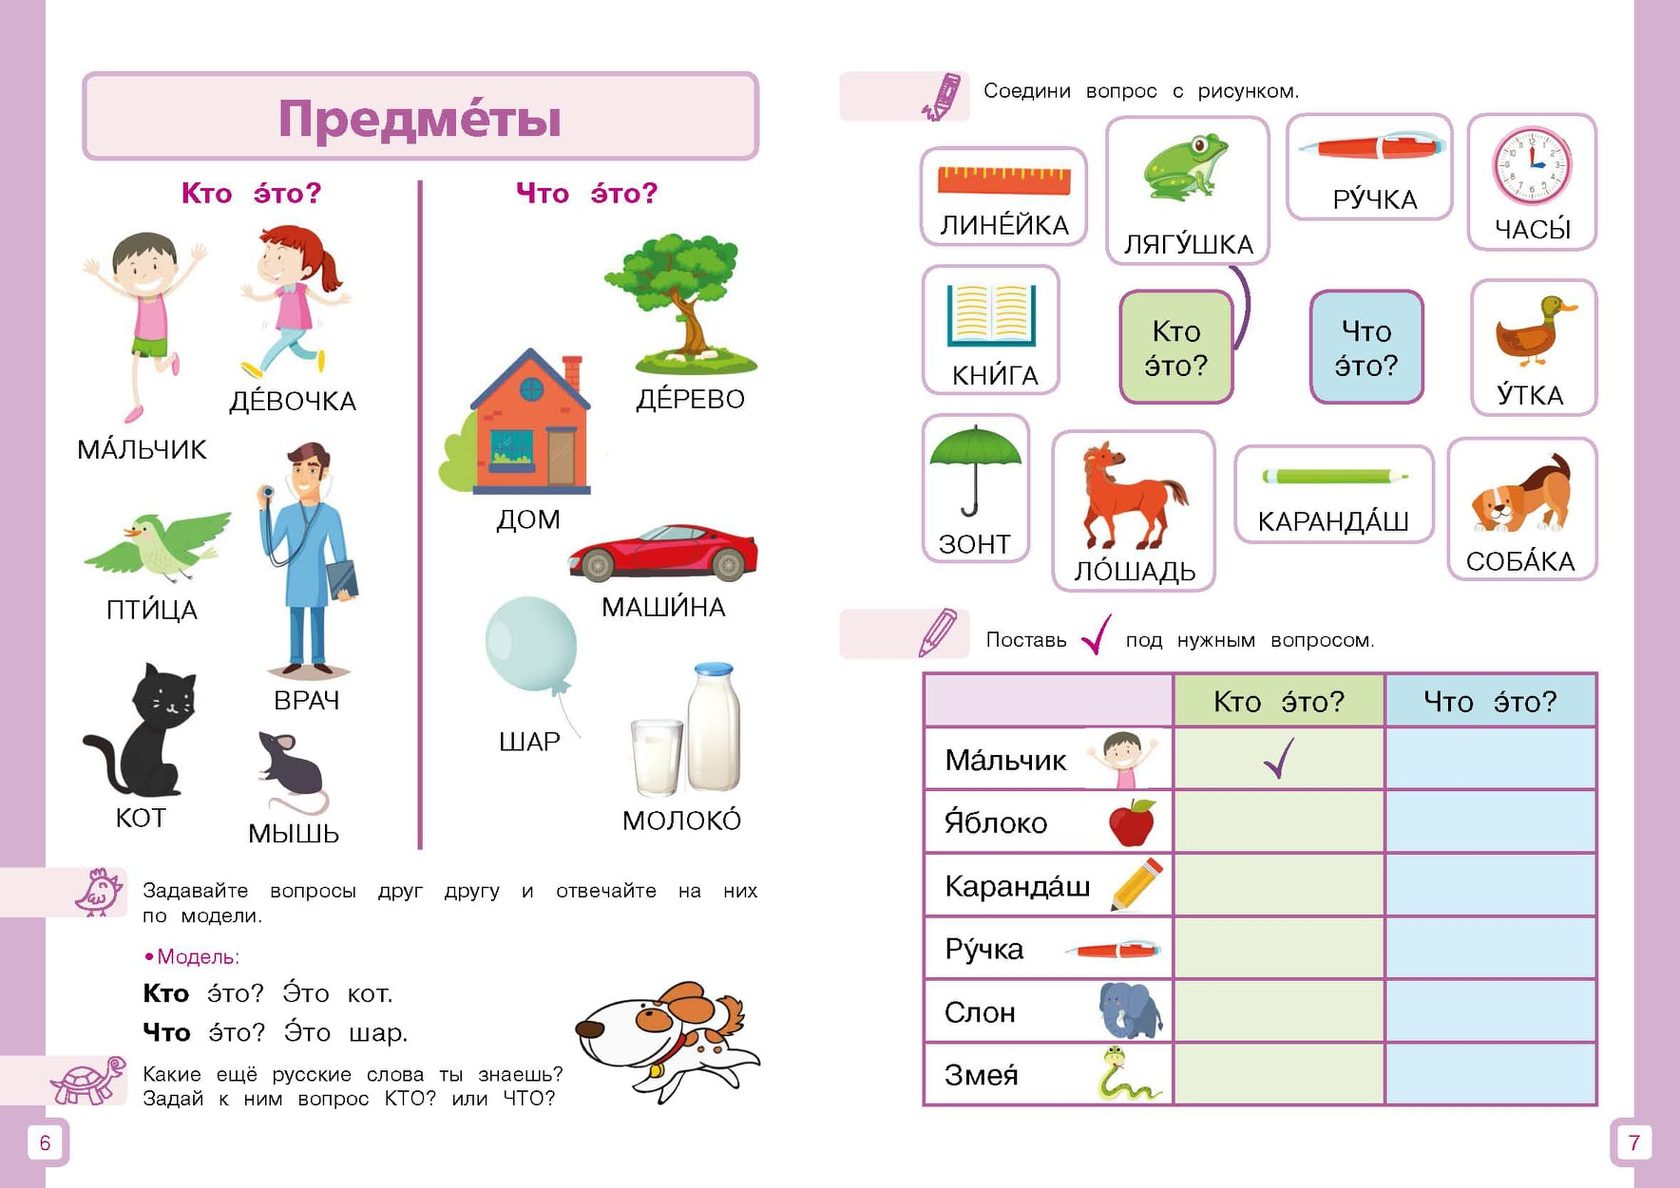 Начинаем изучать русский язык. Задания для детей билингвов. Упражнения по русскому для детей билингвов. Задания для билингвов по русскому языку. РКИ задания для детей.